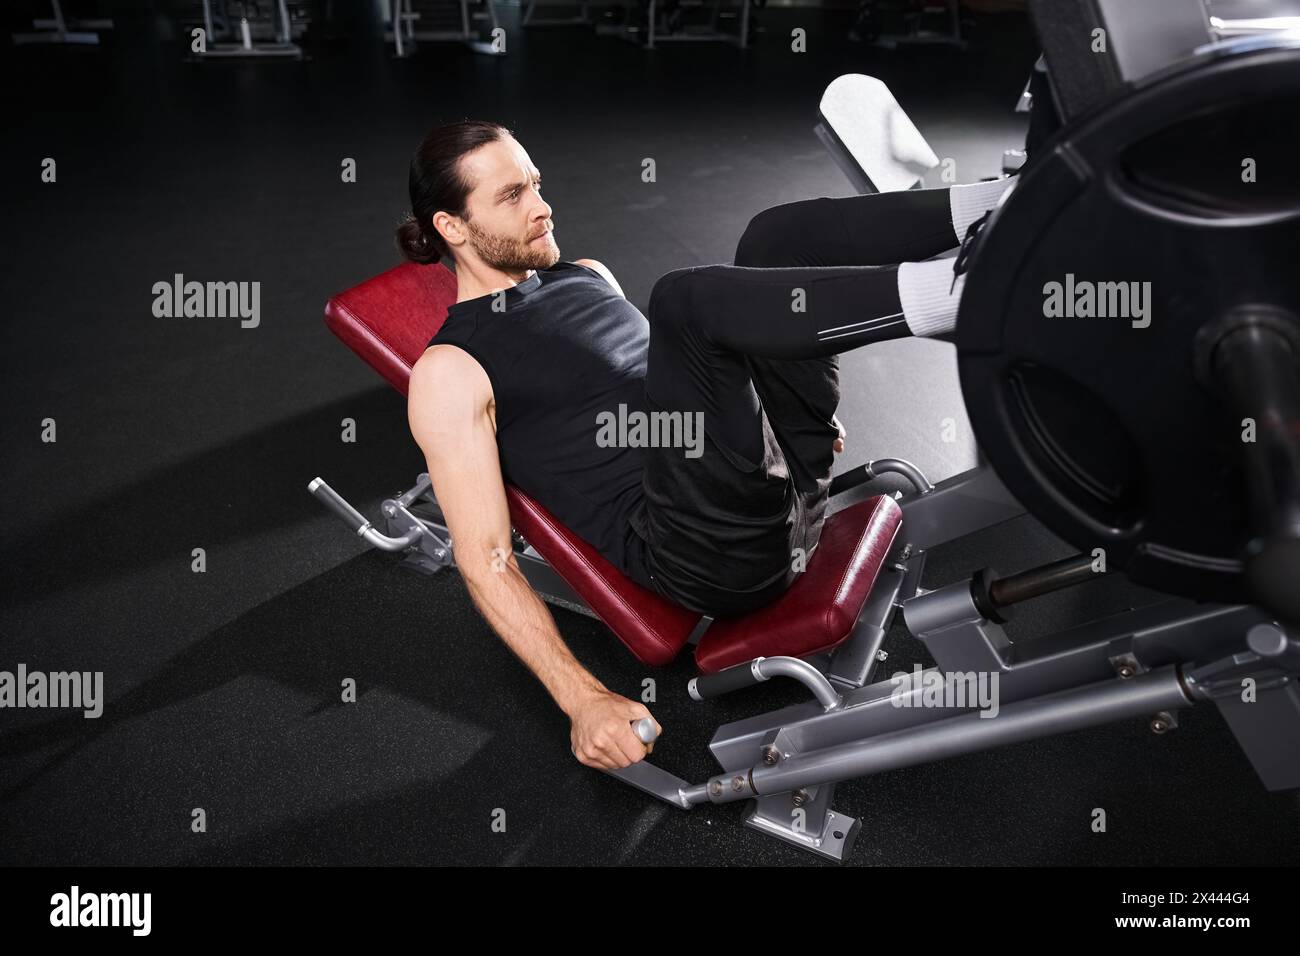 Un homme en forme dans des vêtements de sport assis contemplativement tout en haltérophilie dans un gymnase. Banque D'Images